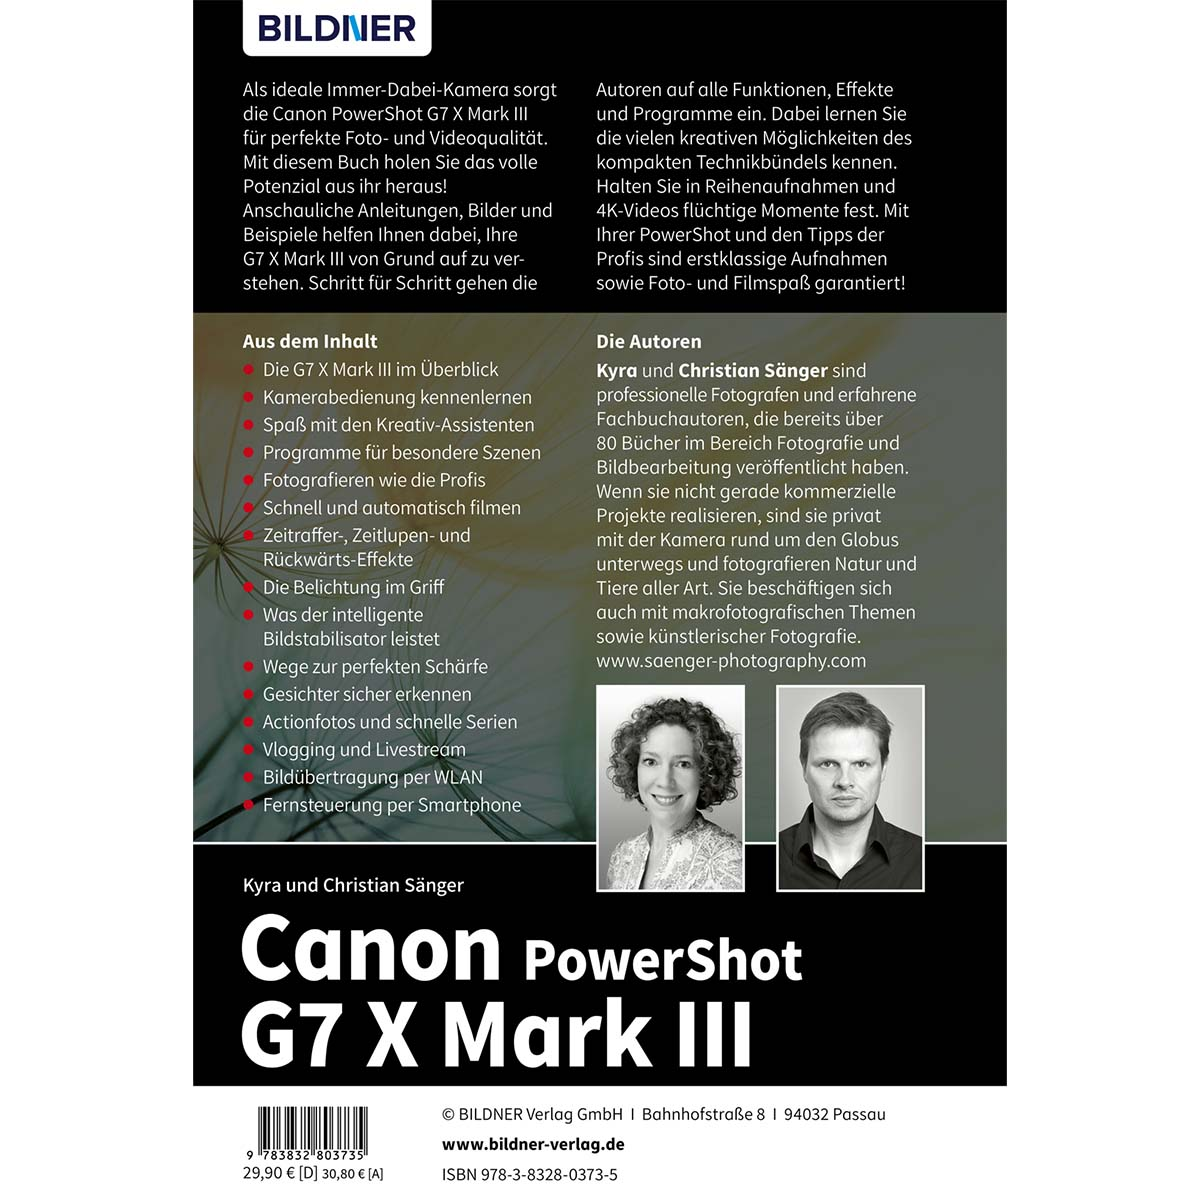 Canon PowerShot umfangreiche III Kamera! Das Praxisbuch - Ihrer G7X Mark zu